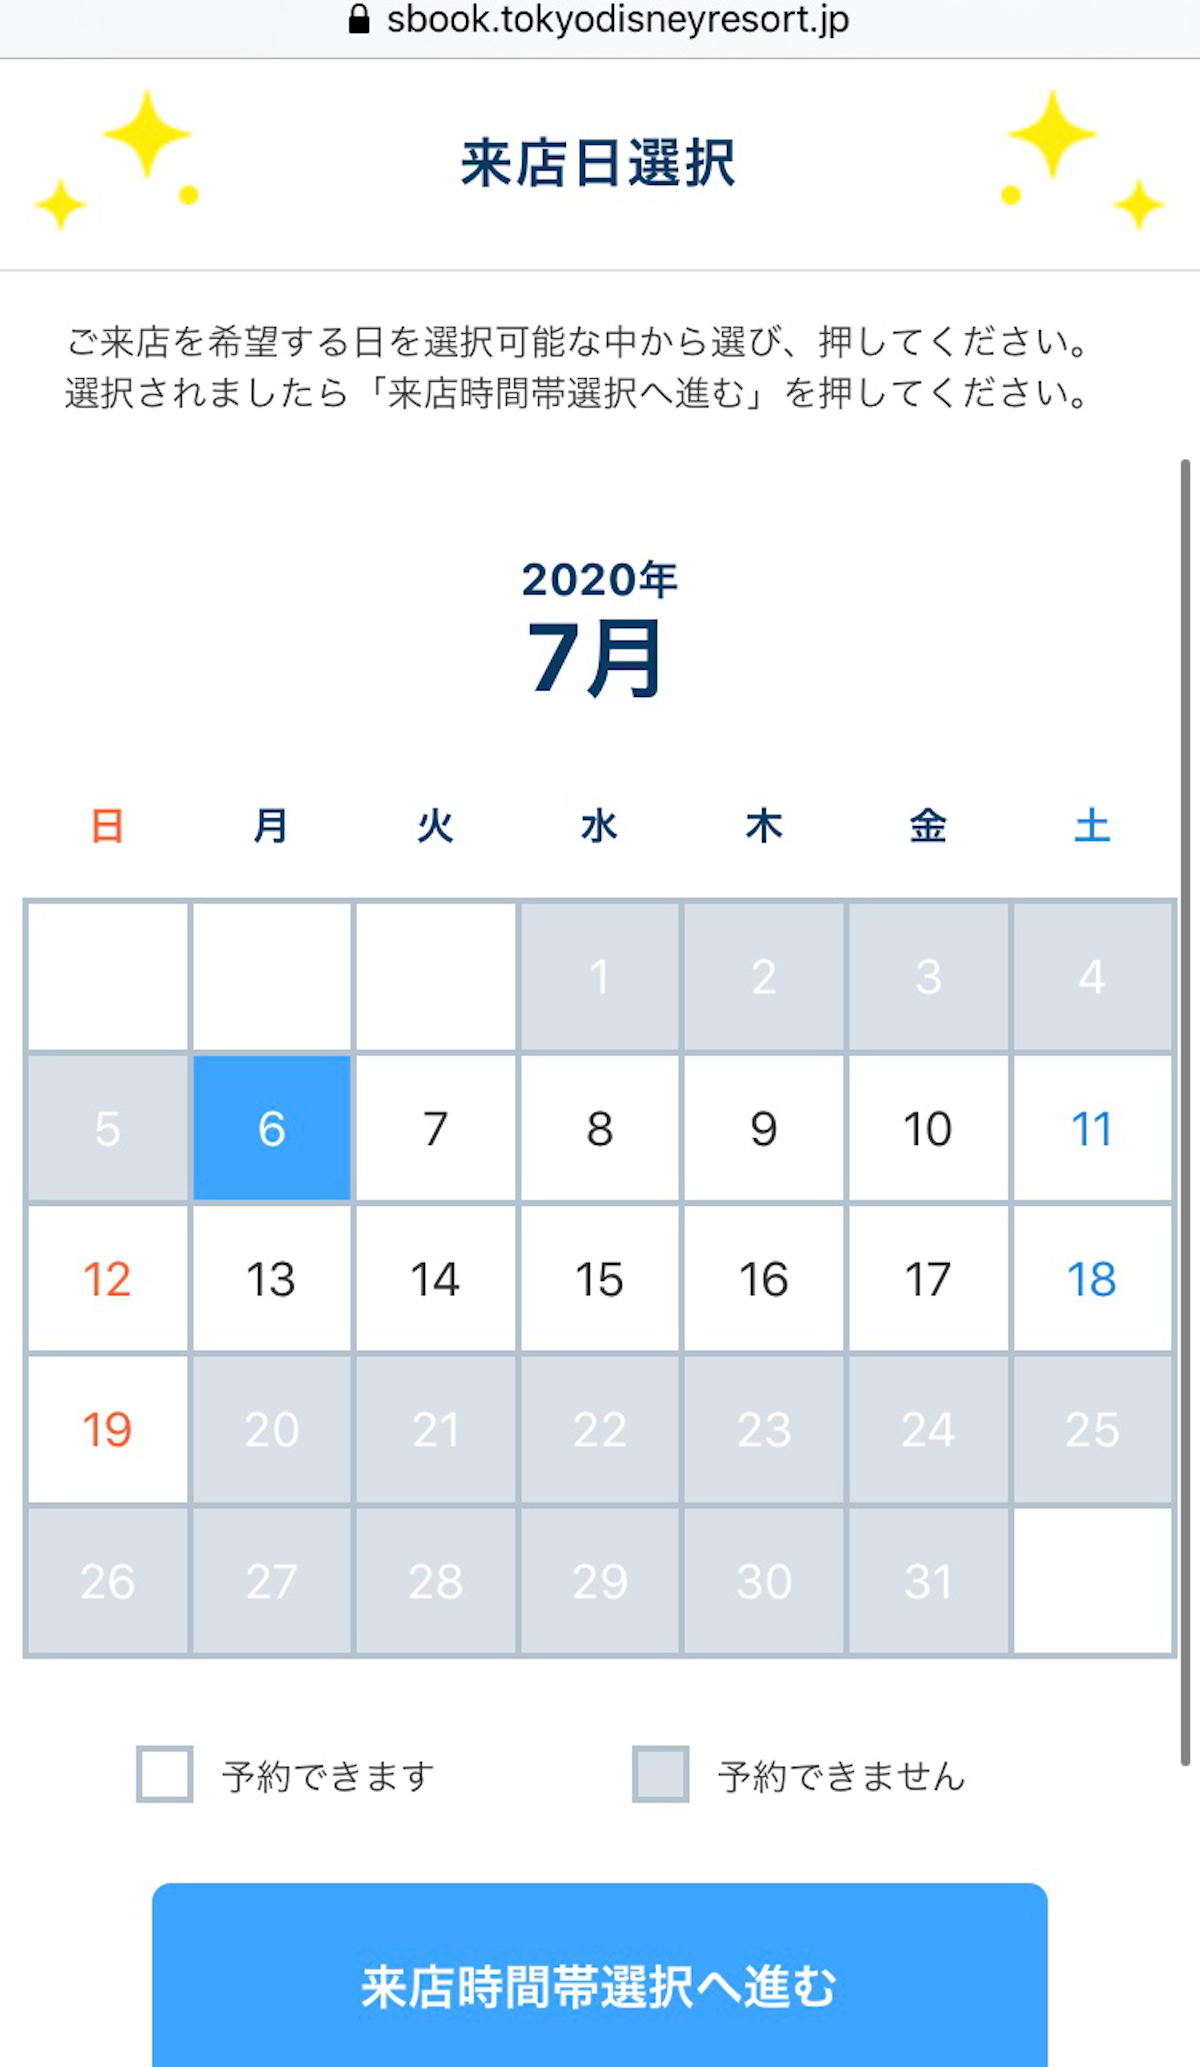 カレンダー画面